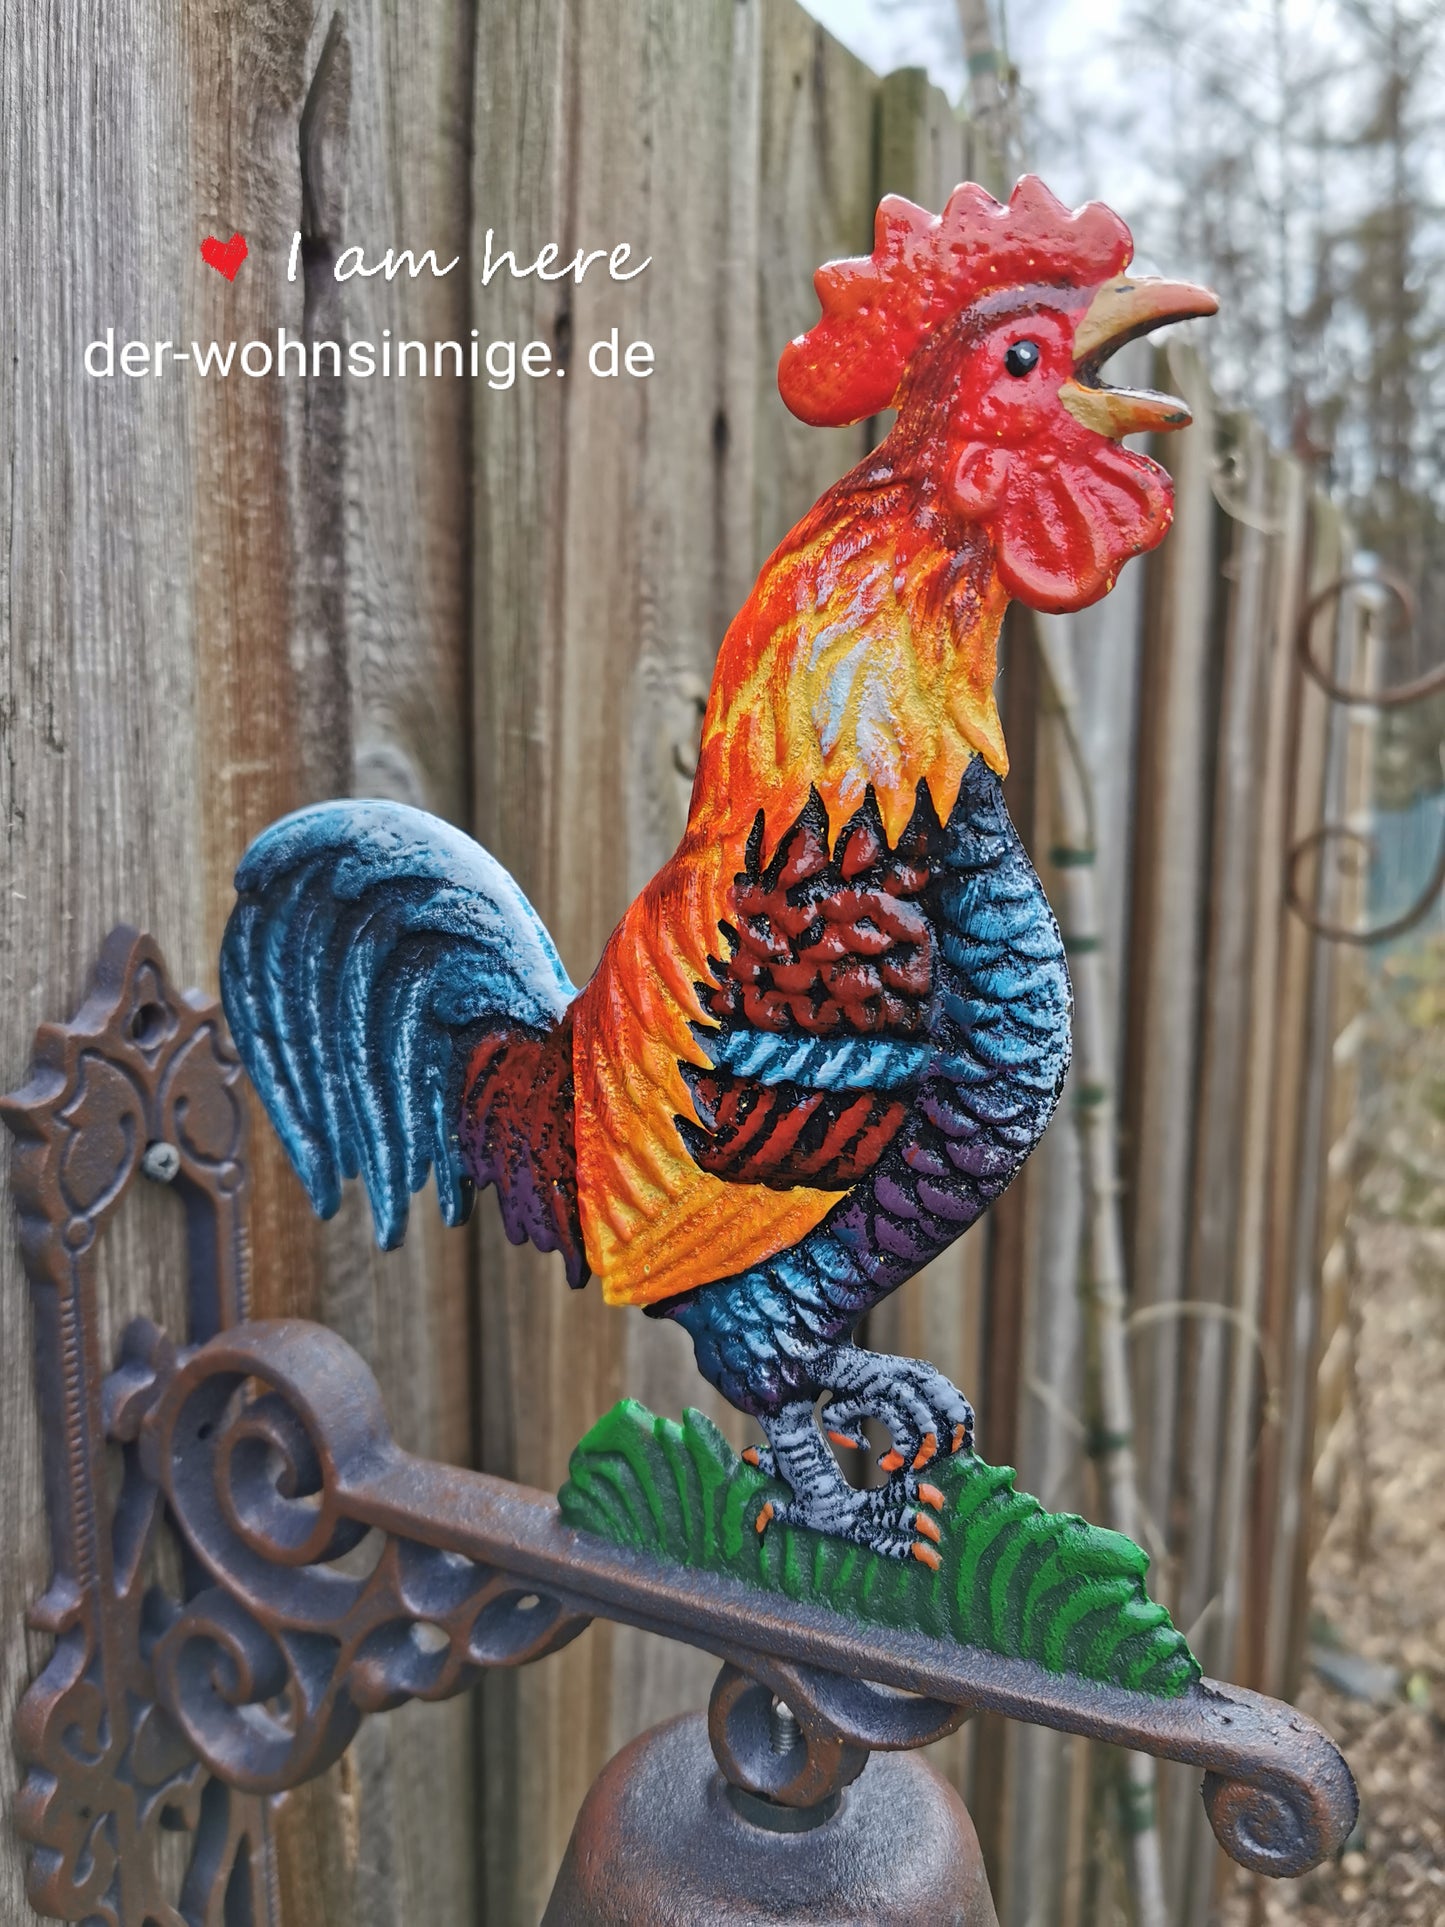 Türglocke aus Gusseisen mit einem prachtvollen Hahn - der Wohnsinnige